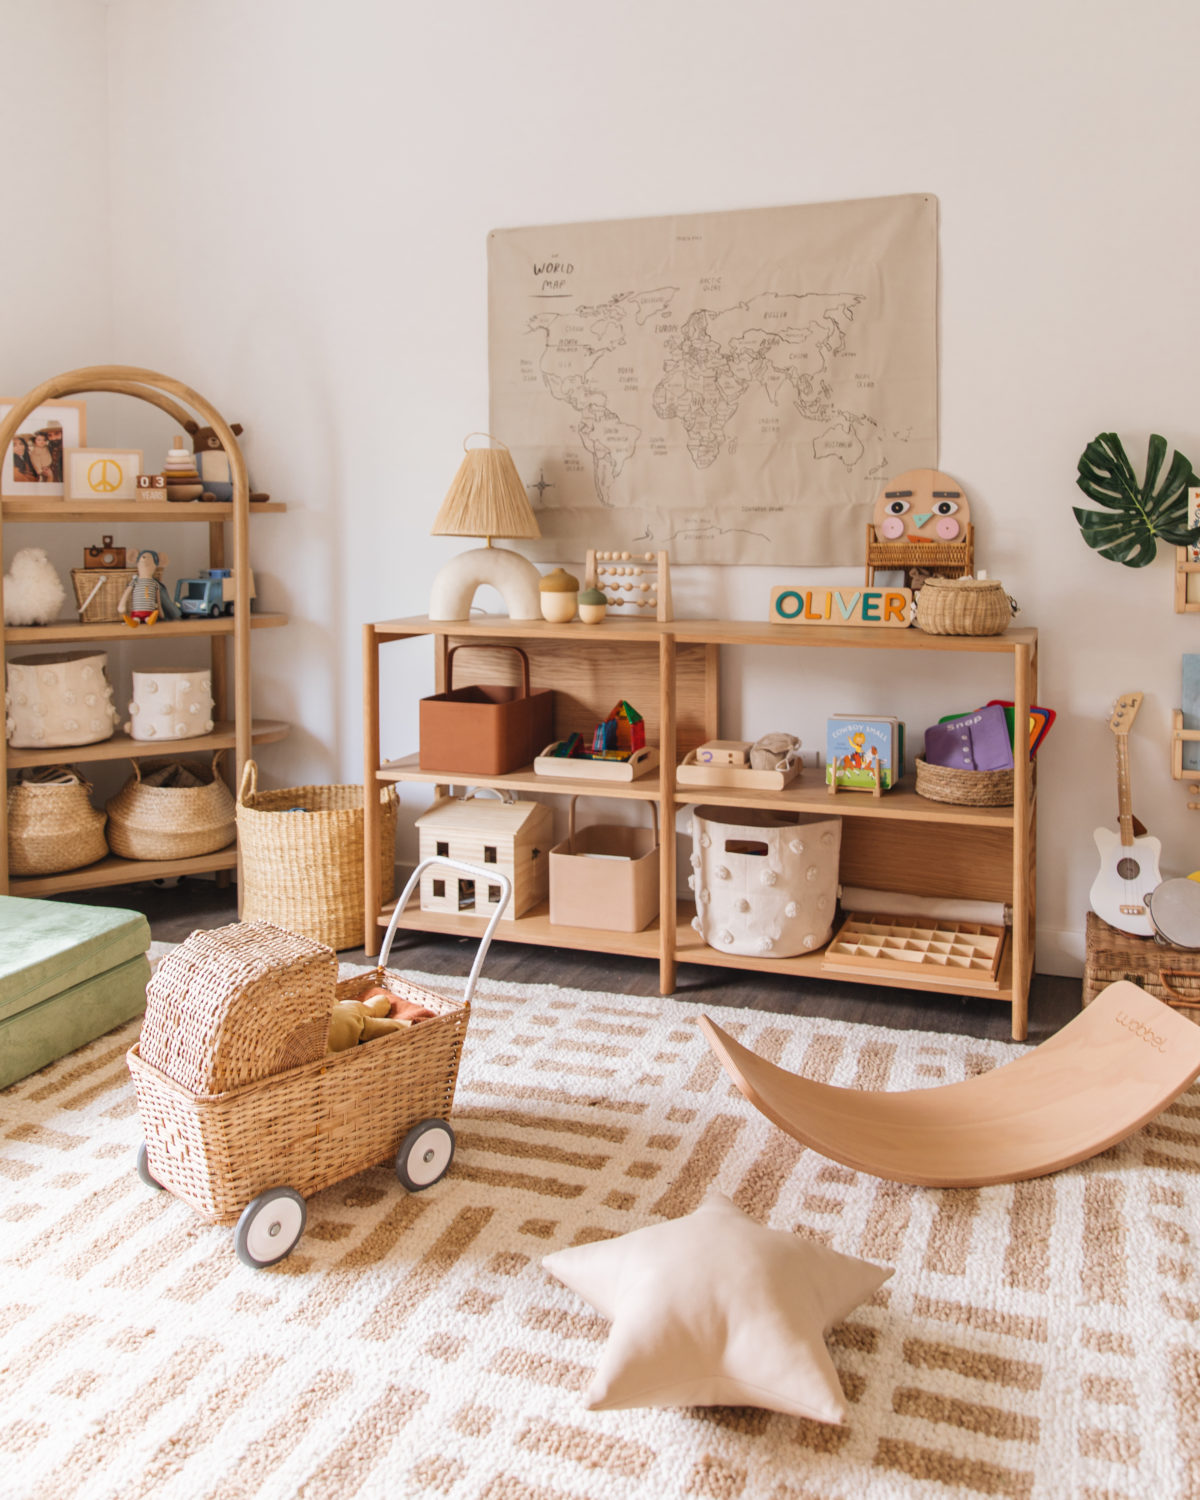 Toddler Room Update: Montessori Inspired Shelf